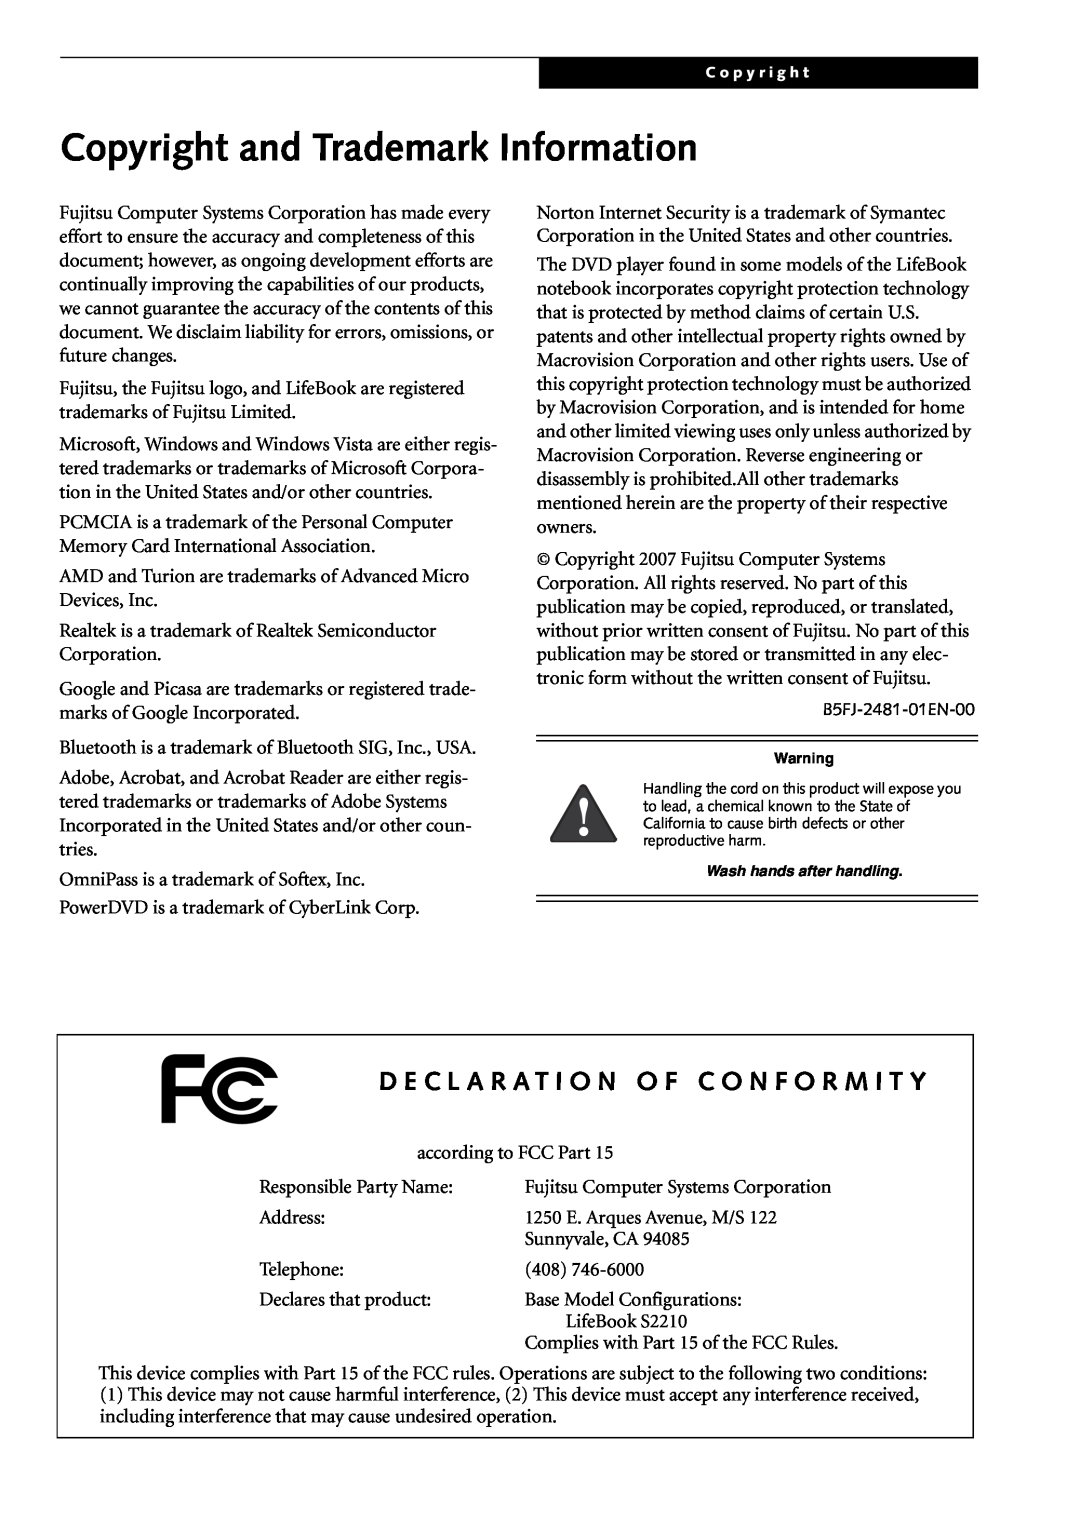 Fujitsu Siemens Computers S2210 manual Copyright and Trademark Information, D E C L A R A T I O N O F C O N F O R M I T Y 